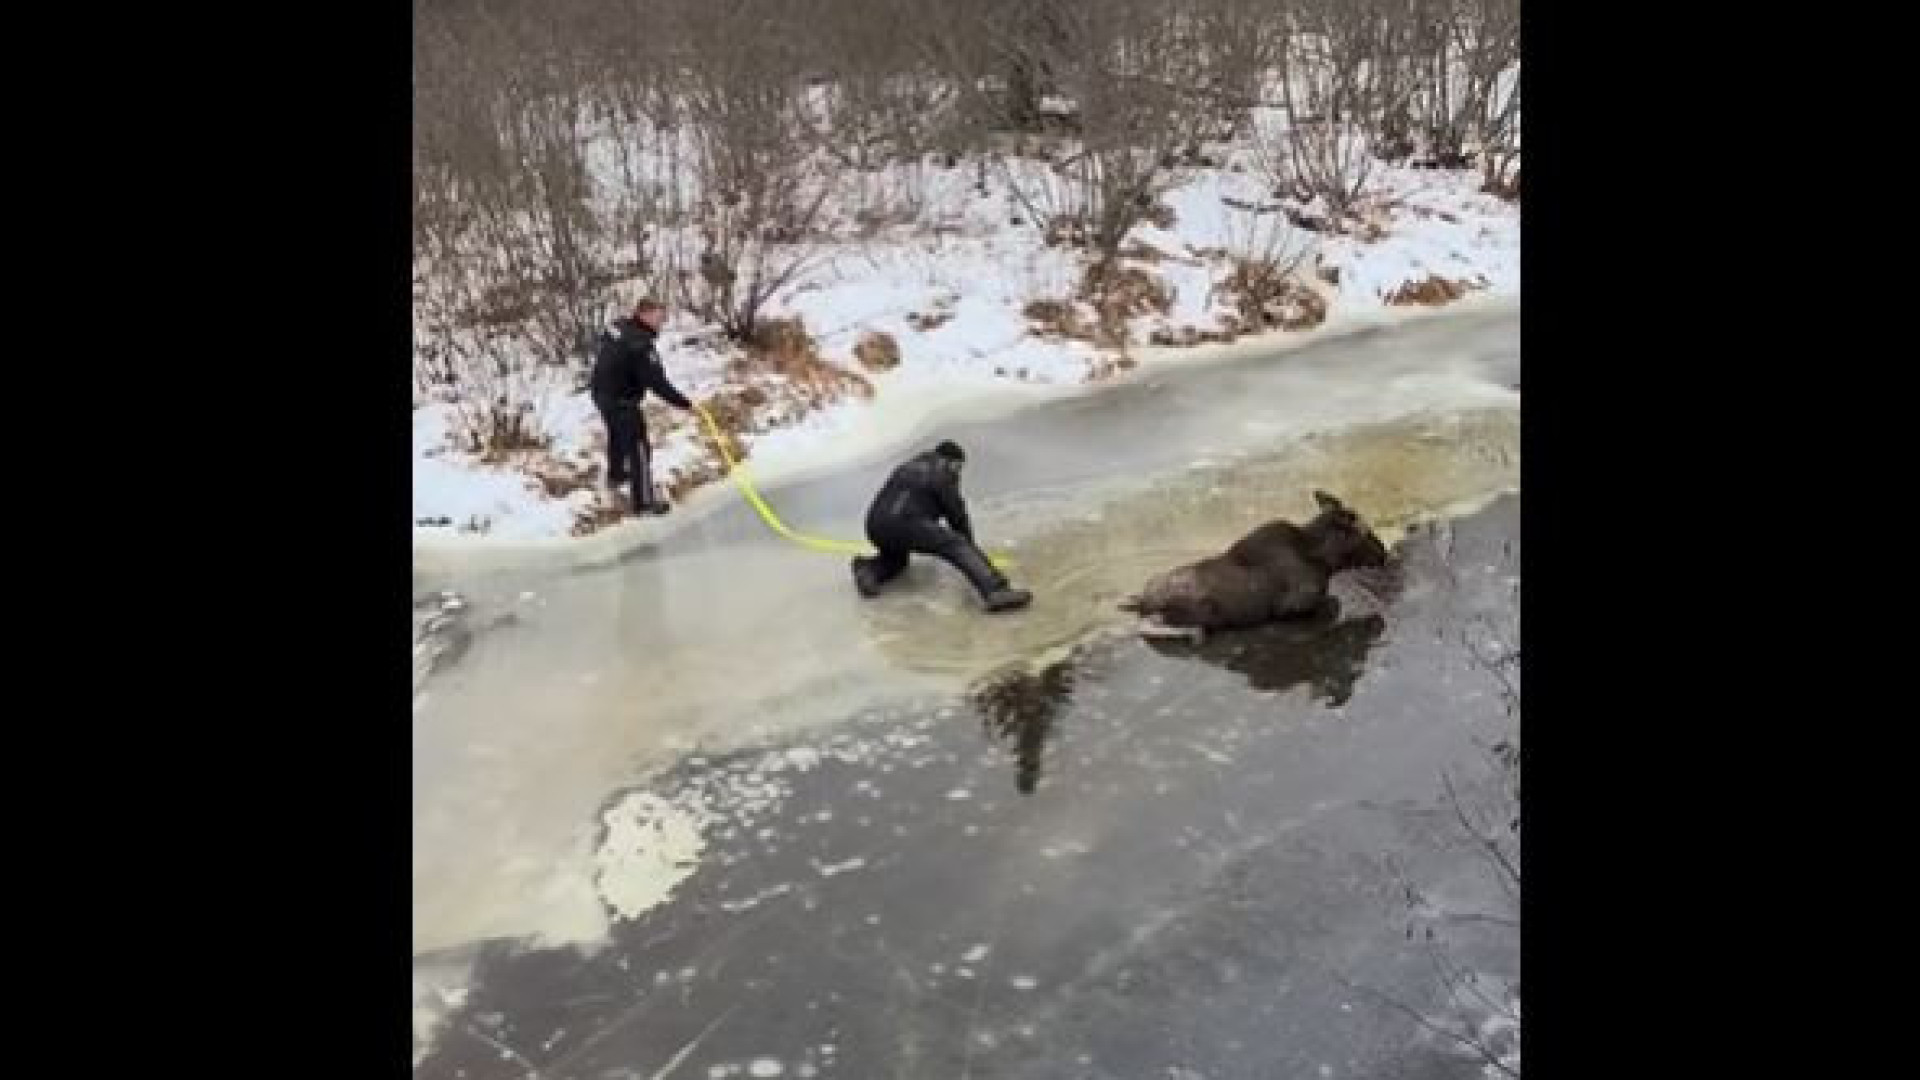 Casal salva alce que caiu e ficou preso em lago congelado; veja